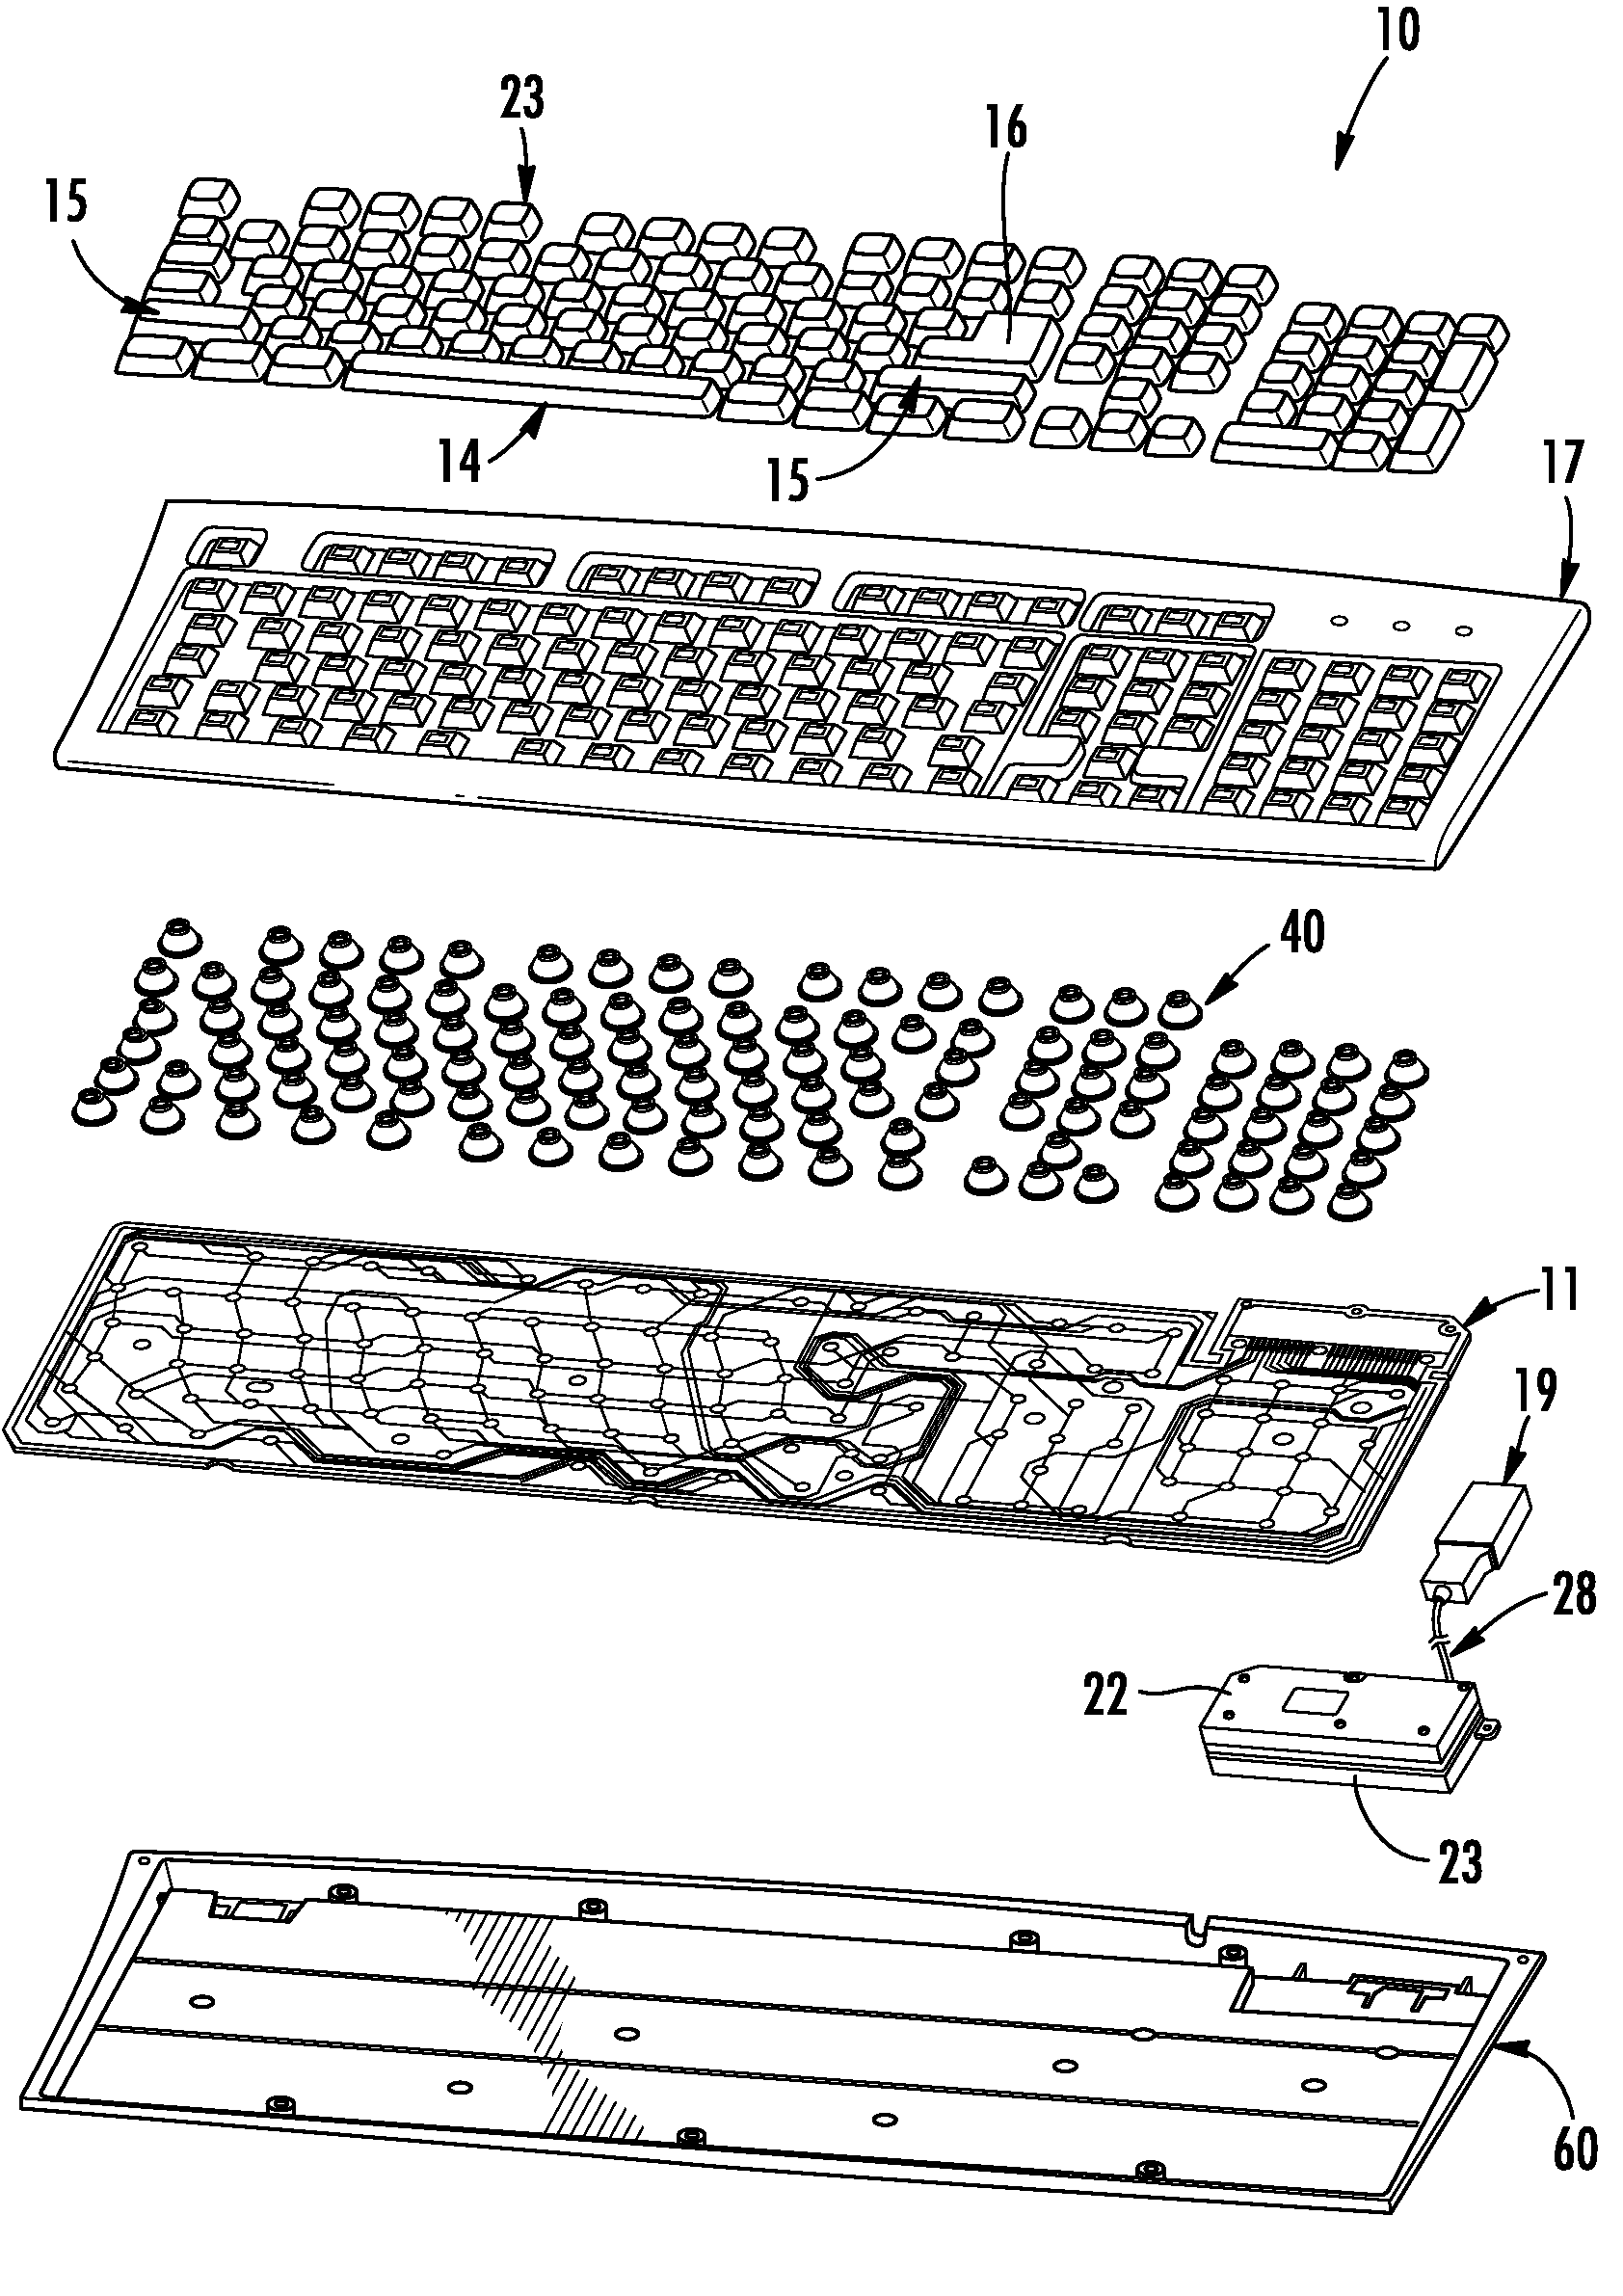 Submersible keyboard